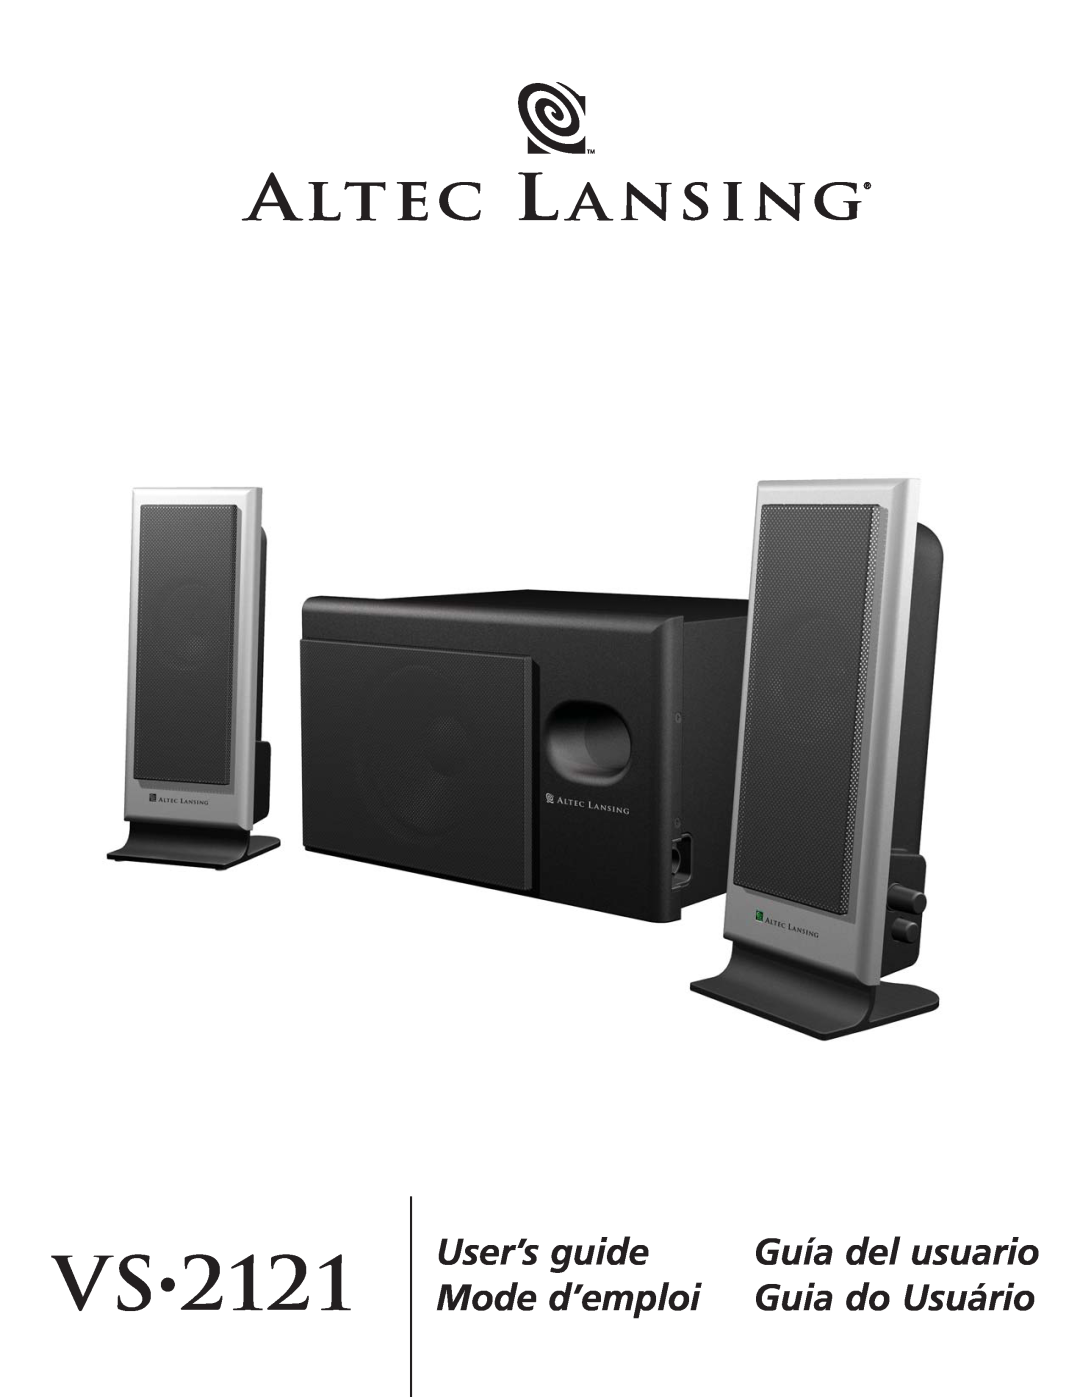 Altec Lansing VS2121 manual Vs, User’s guide, Mode d’emploi, Guía del usuario, Guia do Usuário 